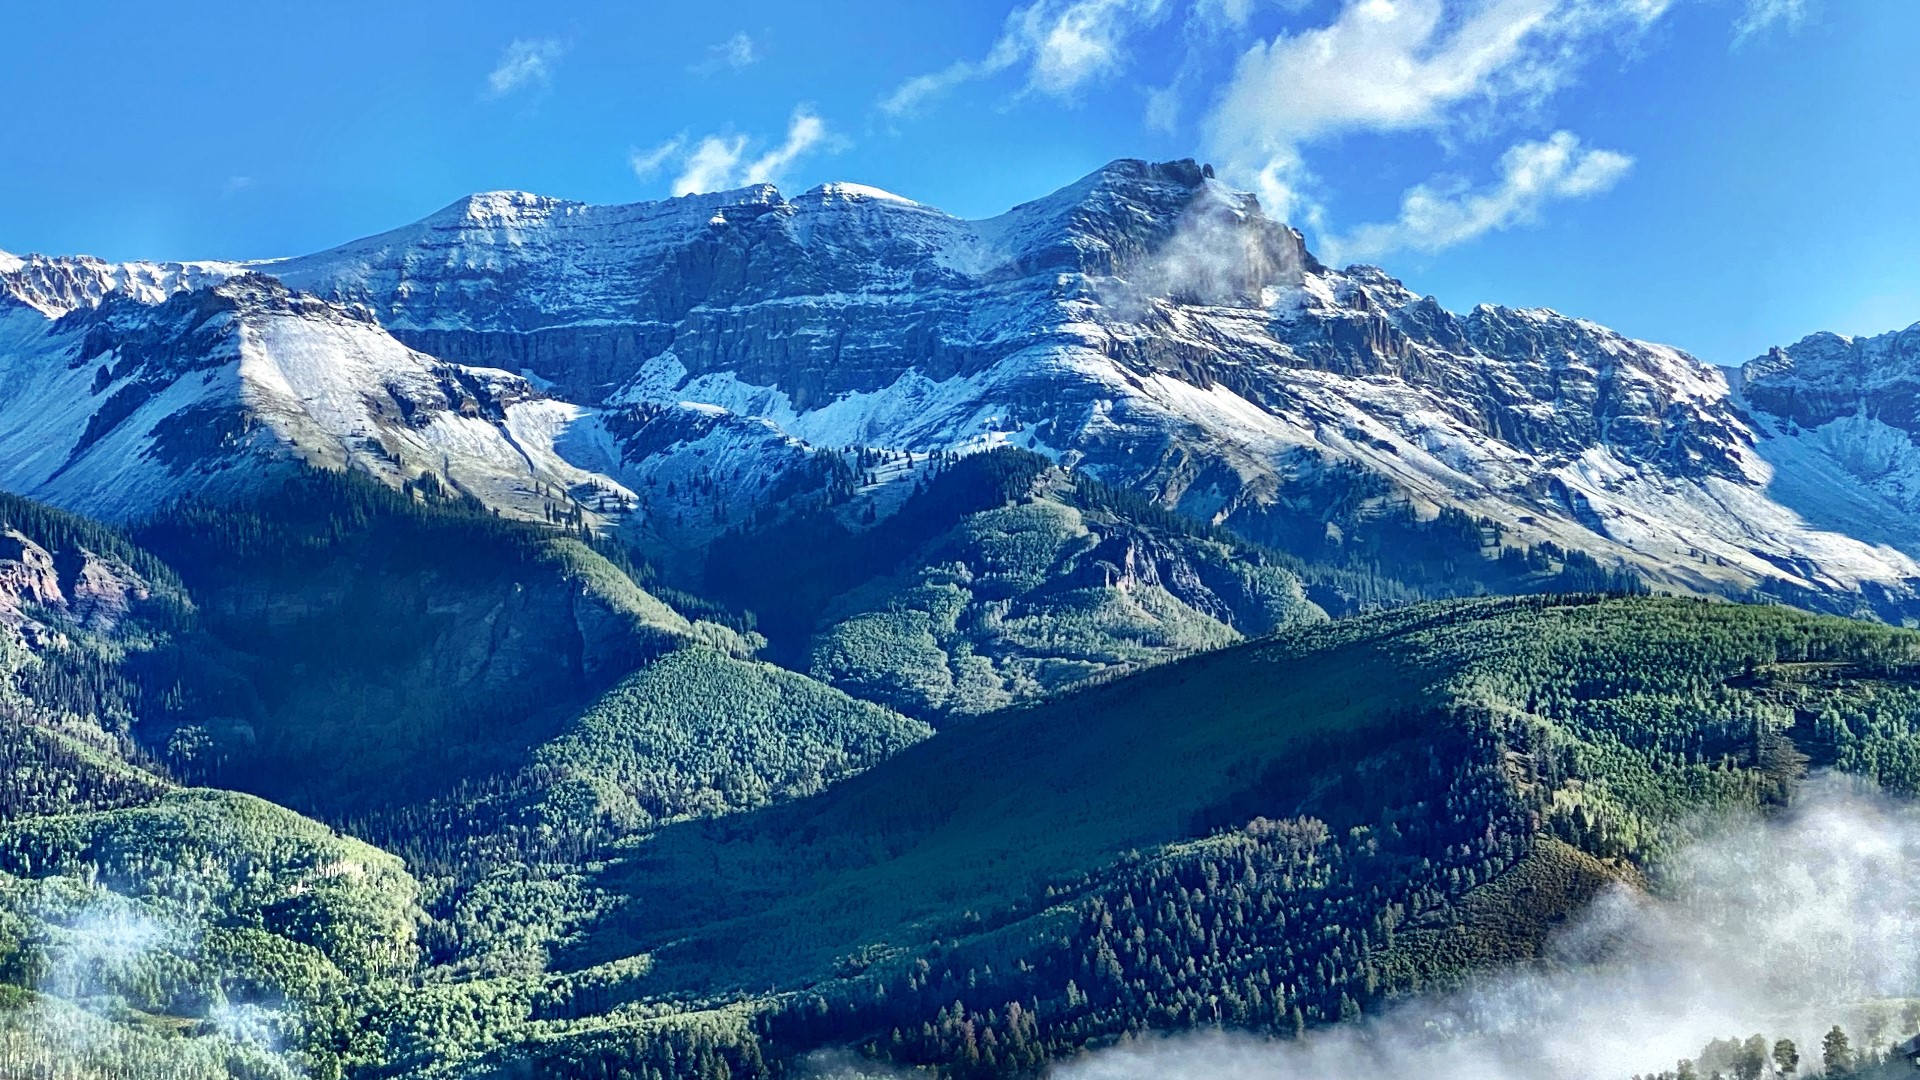 Photos of first Colorado snowfall of 202021 winter season